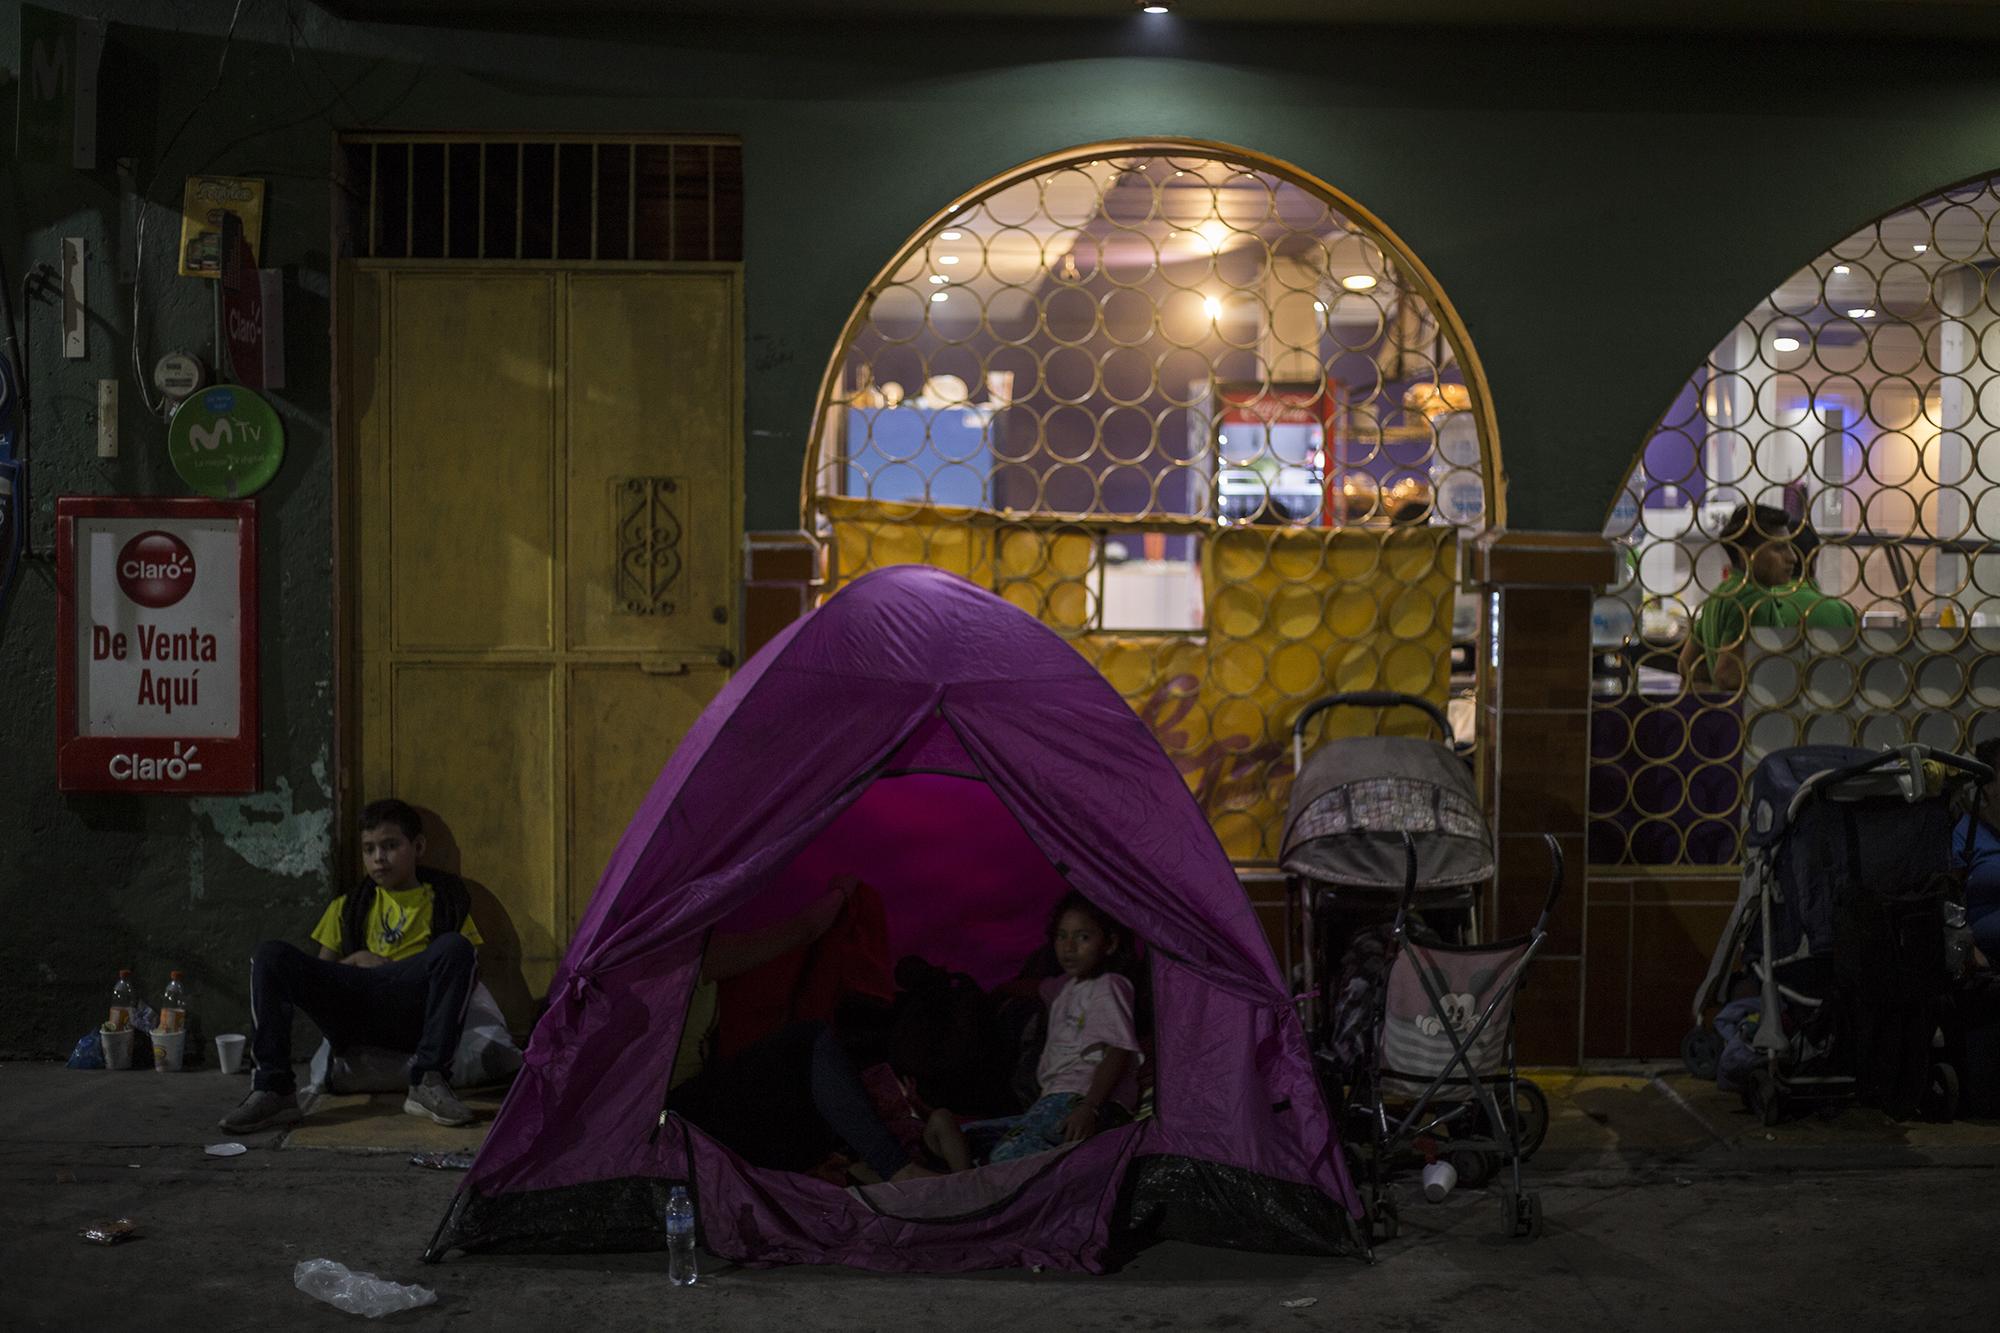 El parque de la ciudad de Ayutla, en la frontera Tecún Umán, Guatemala, luce desde hace meses como un campamento permanente de migrantes que pretenden ingresar a México. Una familia descansa la noche del viernes 18 de enero en esa plaza.